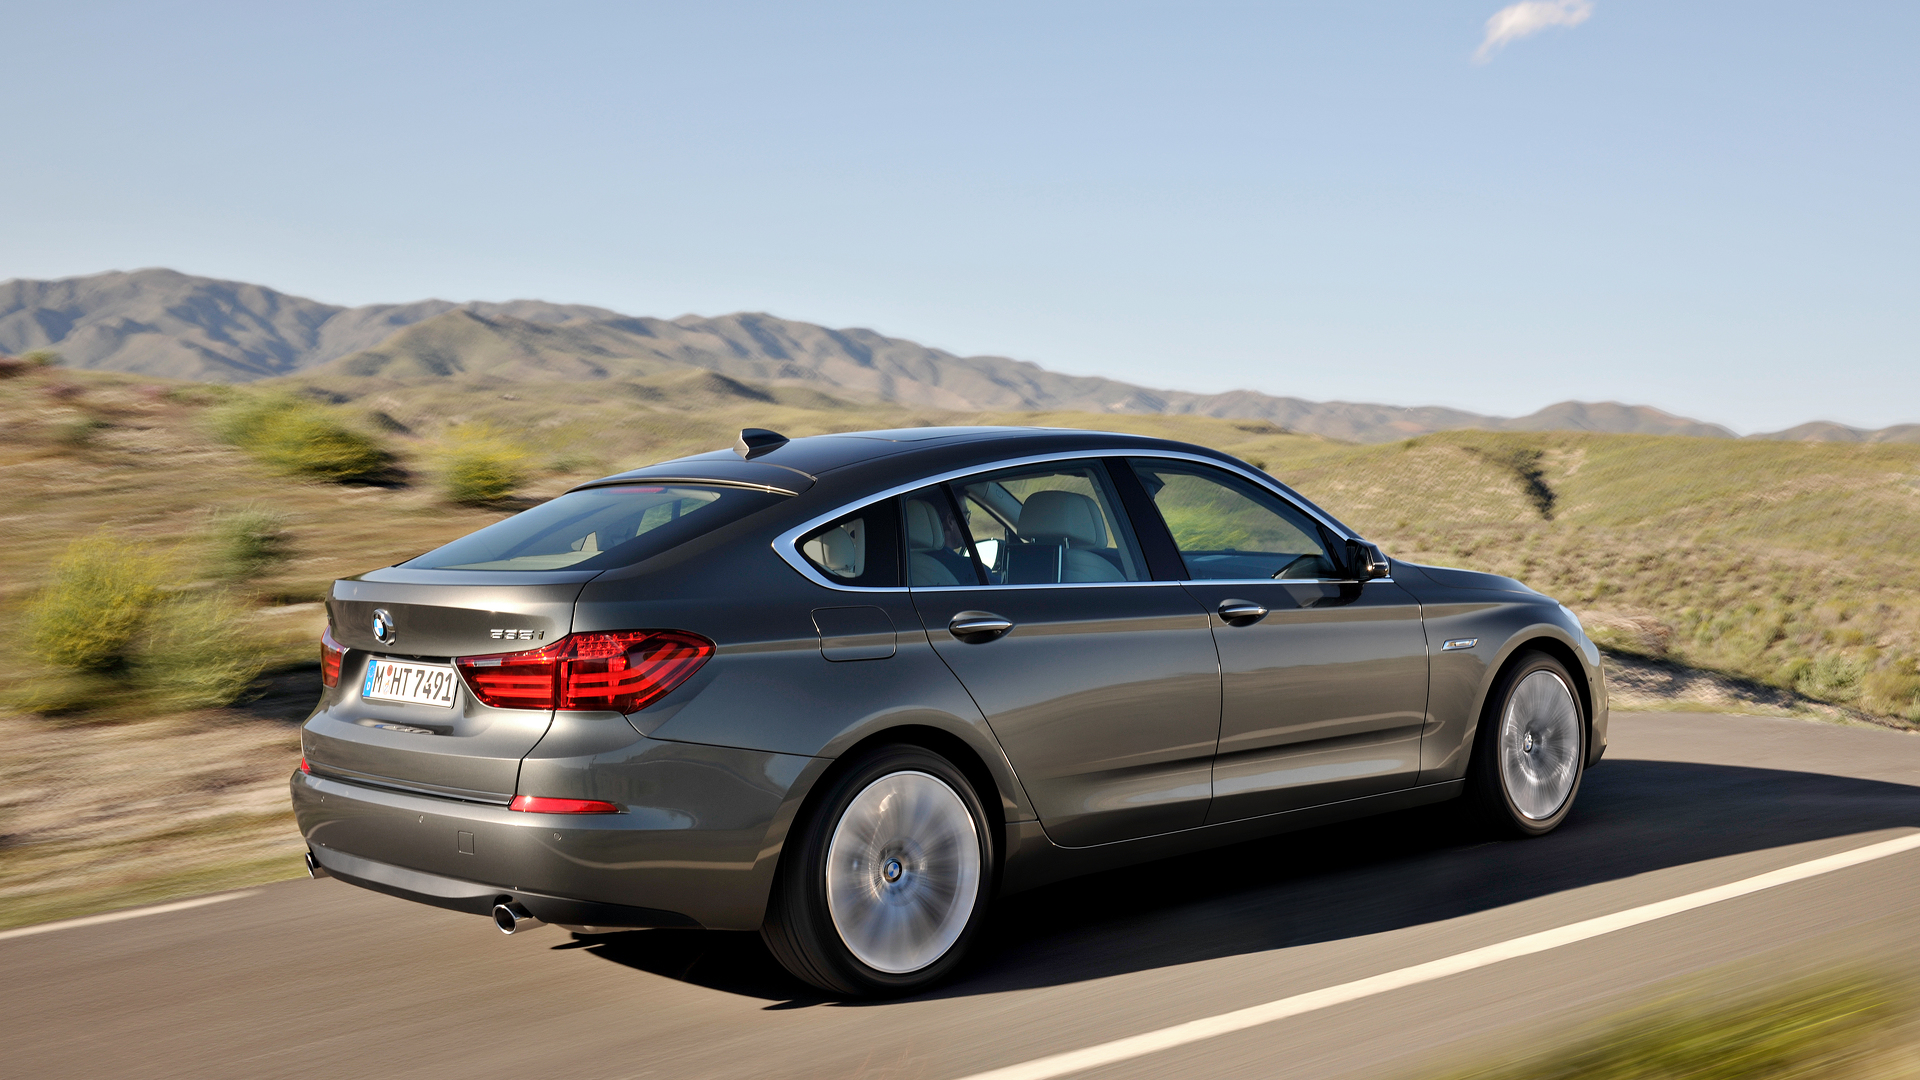  Официально: BMW понижает детали относительно своего 5 Series Gran Turismo